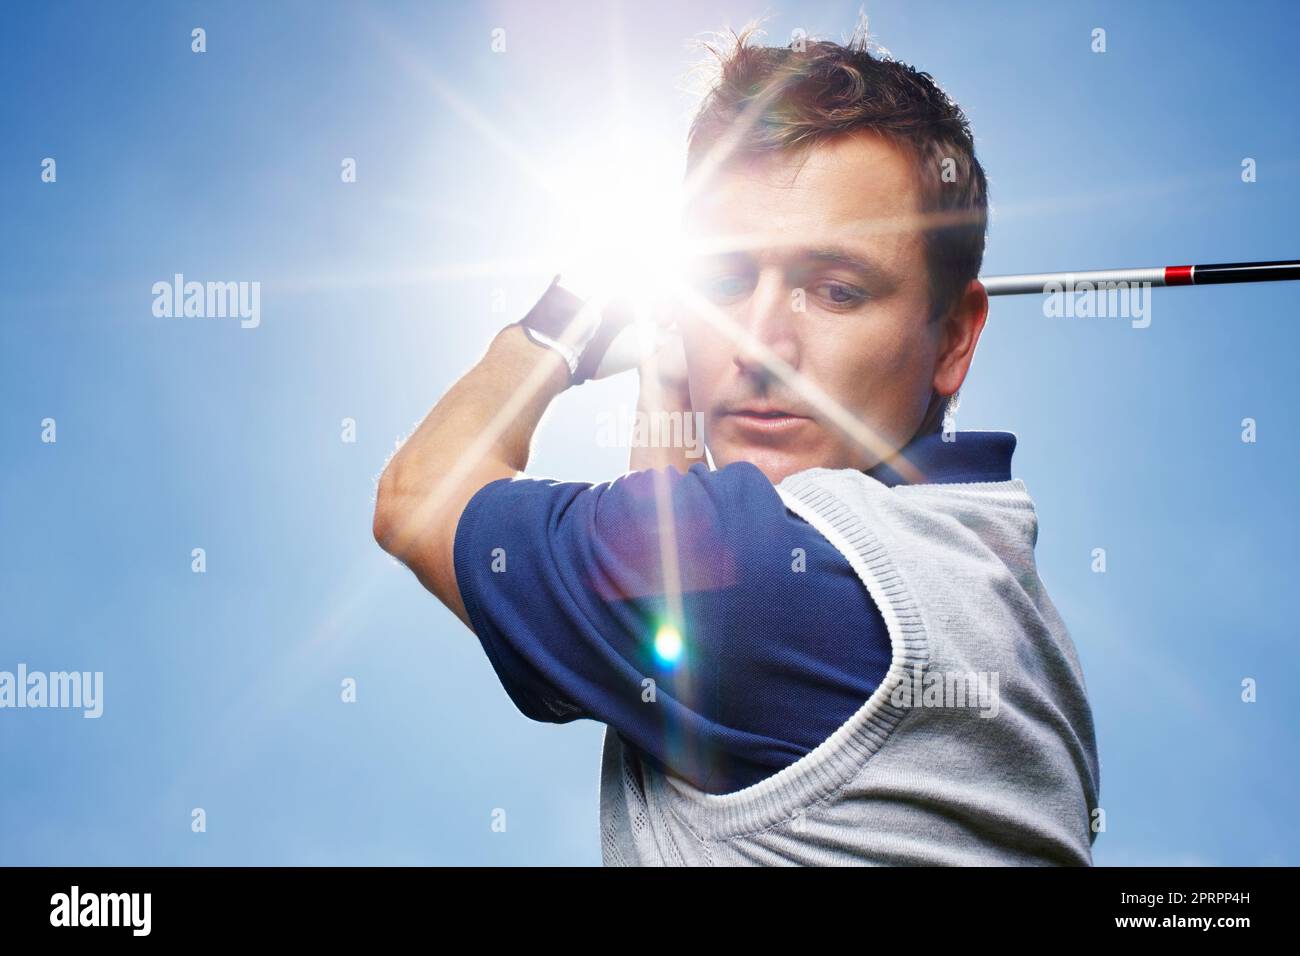 HES konzentrierte sich auf seinen Schwung. Junger Mann in vollem Gange während einer Runde Golf gegen einen blauen Himmel. Stockfoto